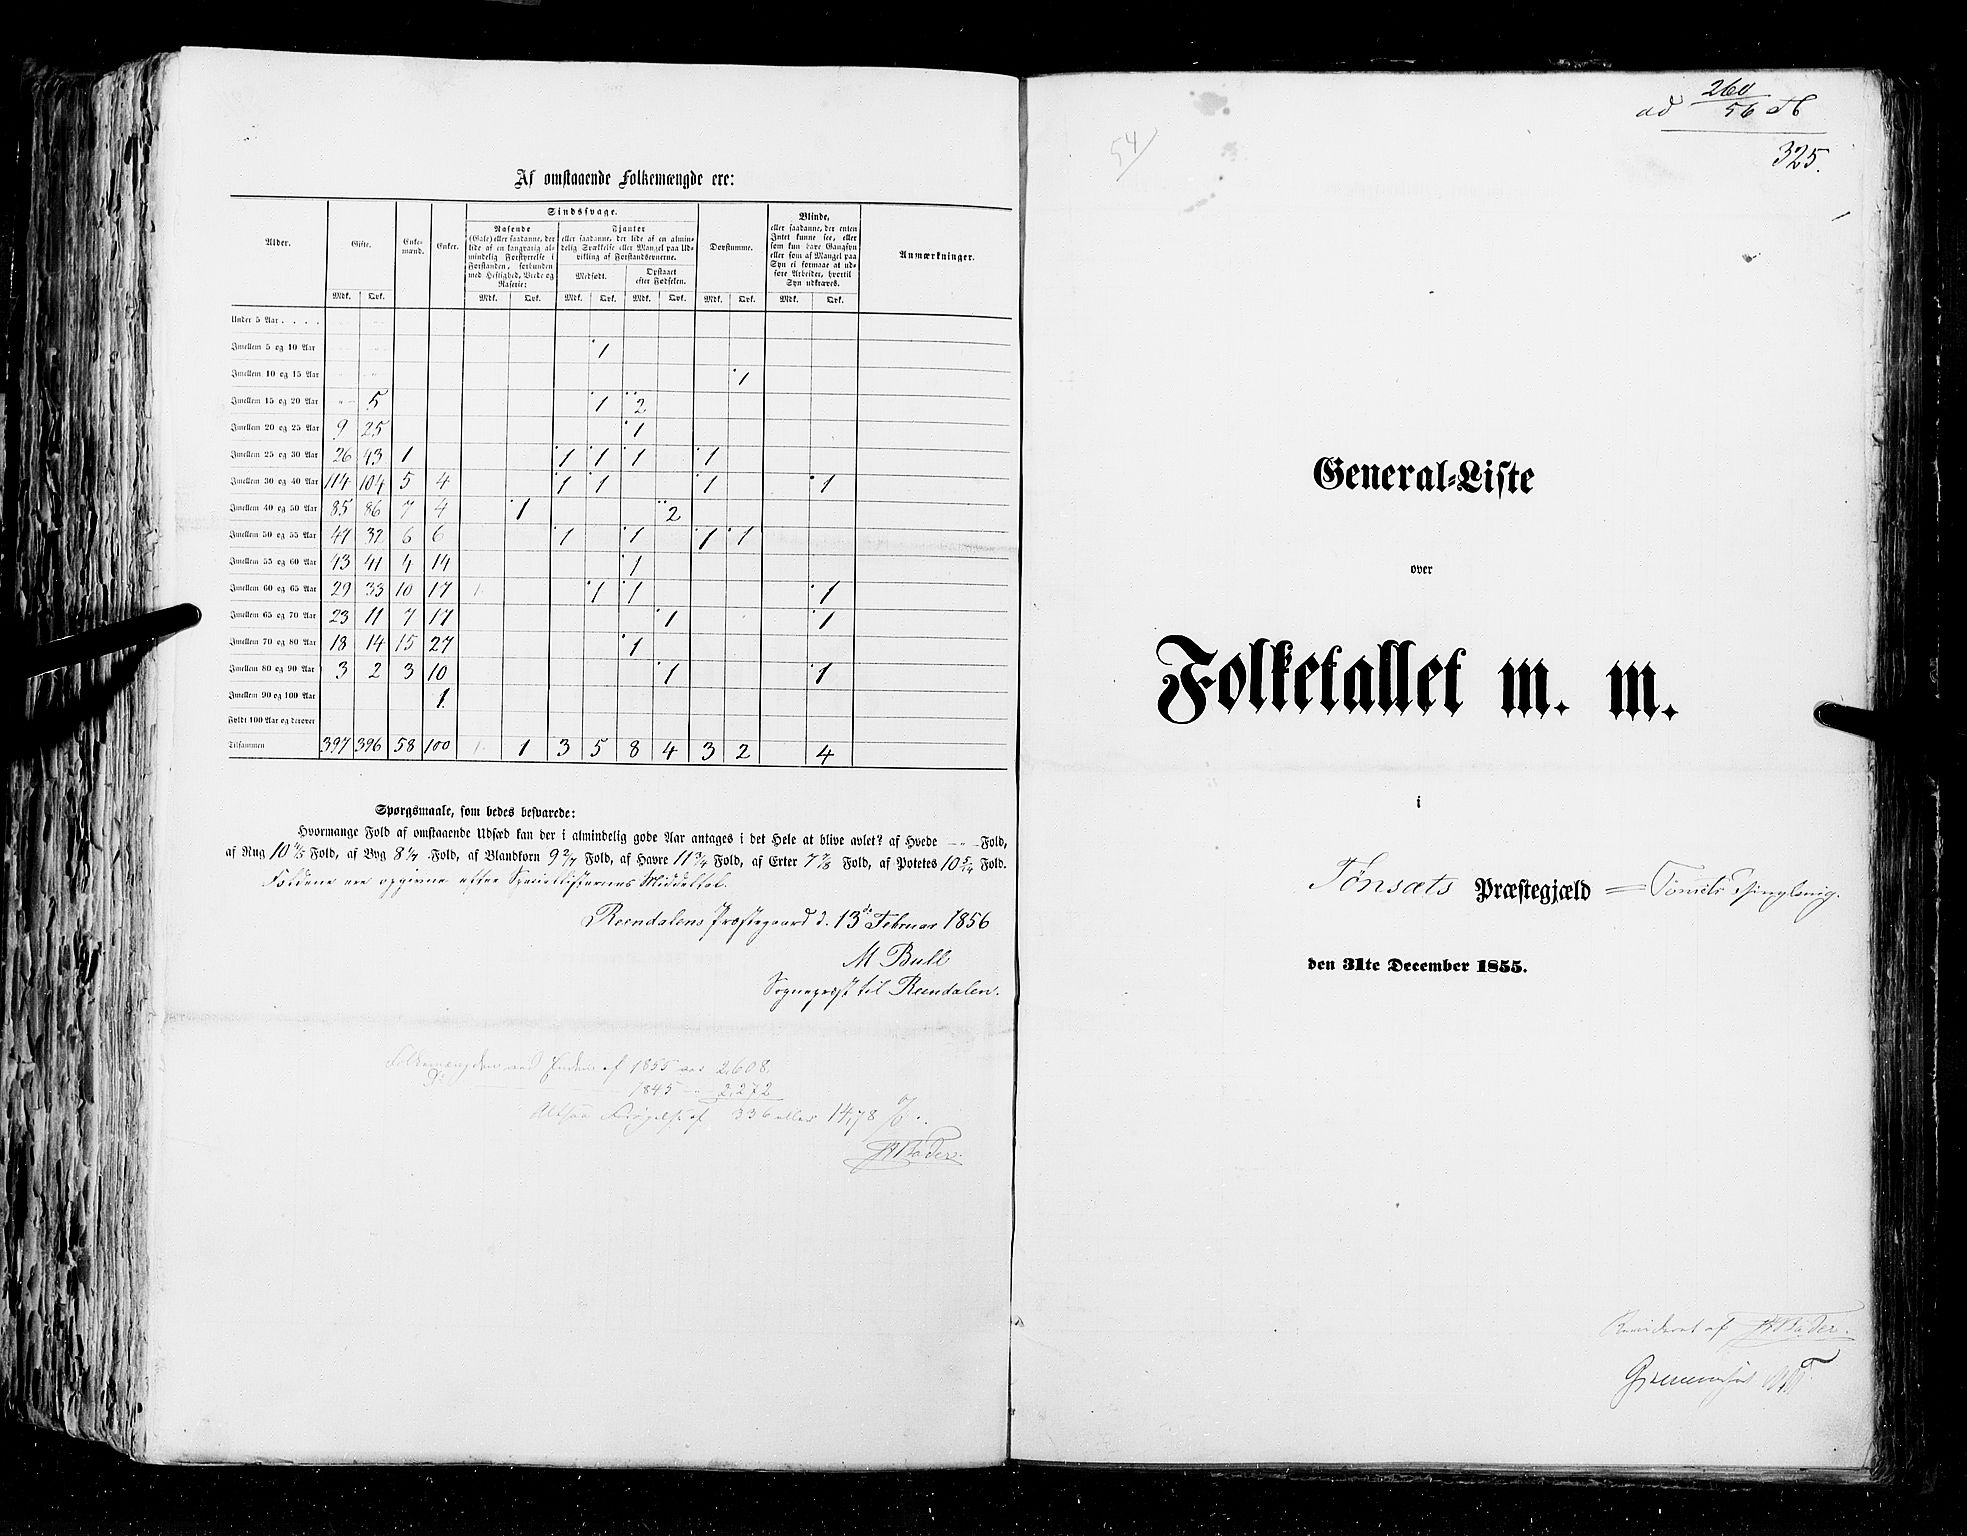 RA, Census 1855, vol. 1: Akershus amt, Smålenenes amt og Hedemarken amt, 1855, p. 325